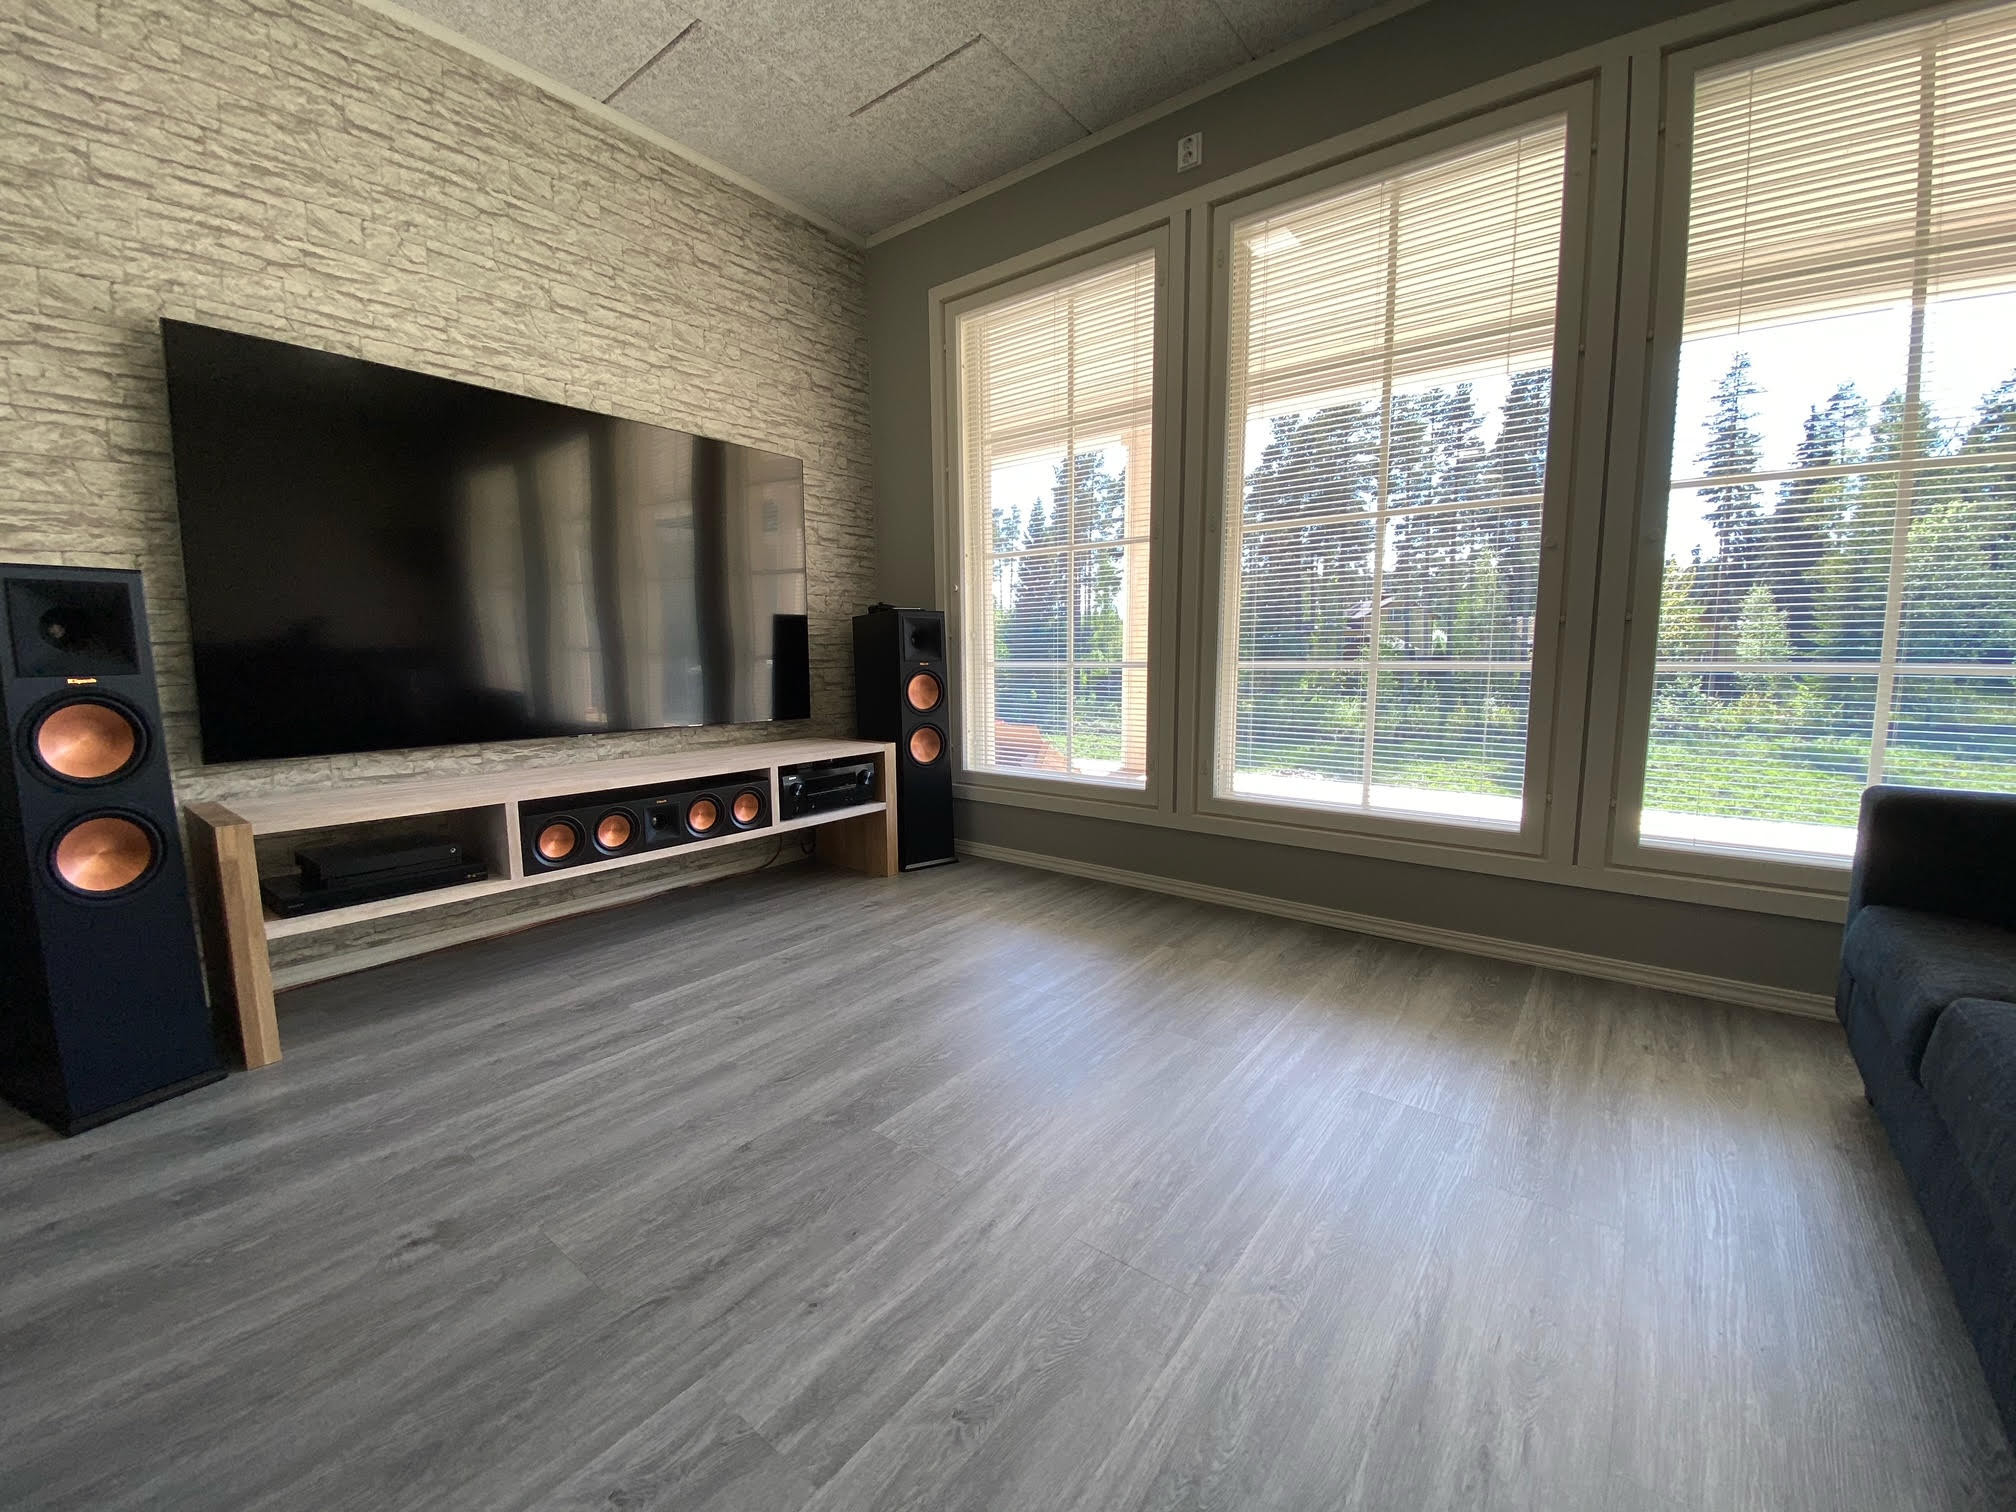 Grauer Fussboden In Der Einrichtung: So Verbinden Sie Verschiedene inside Grauer Boden Wohnzimmer